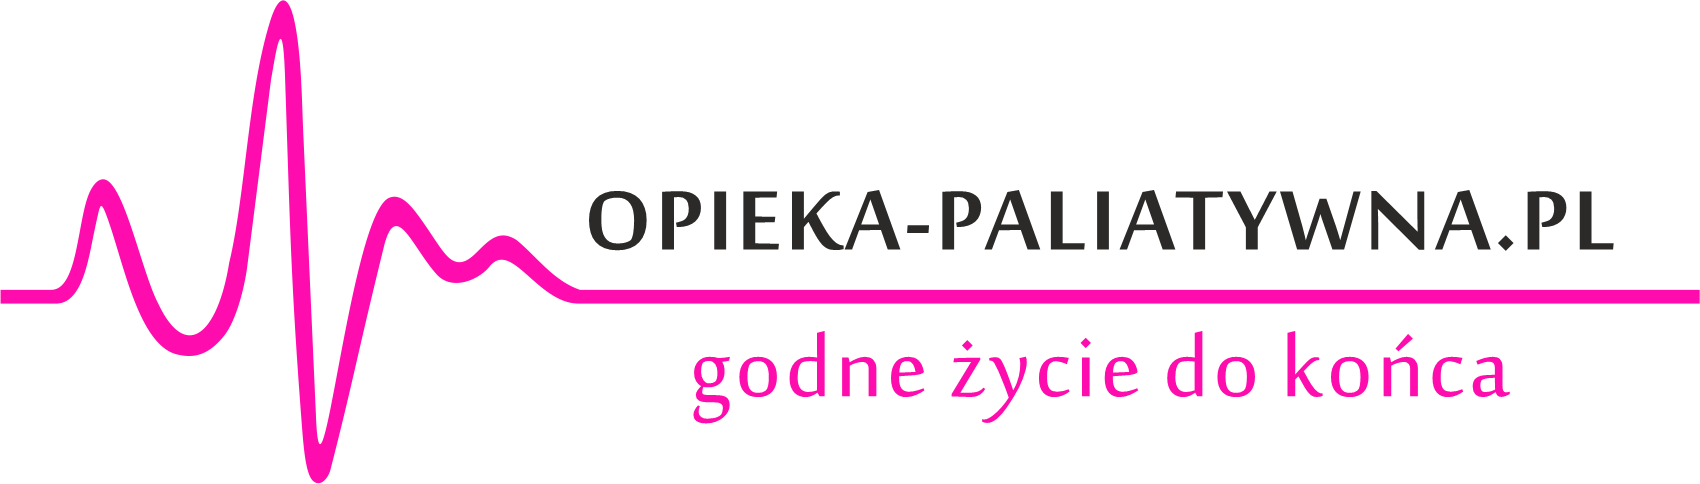 opieka paliatywna logo